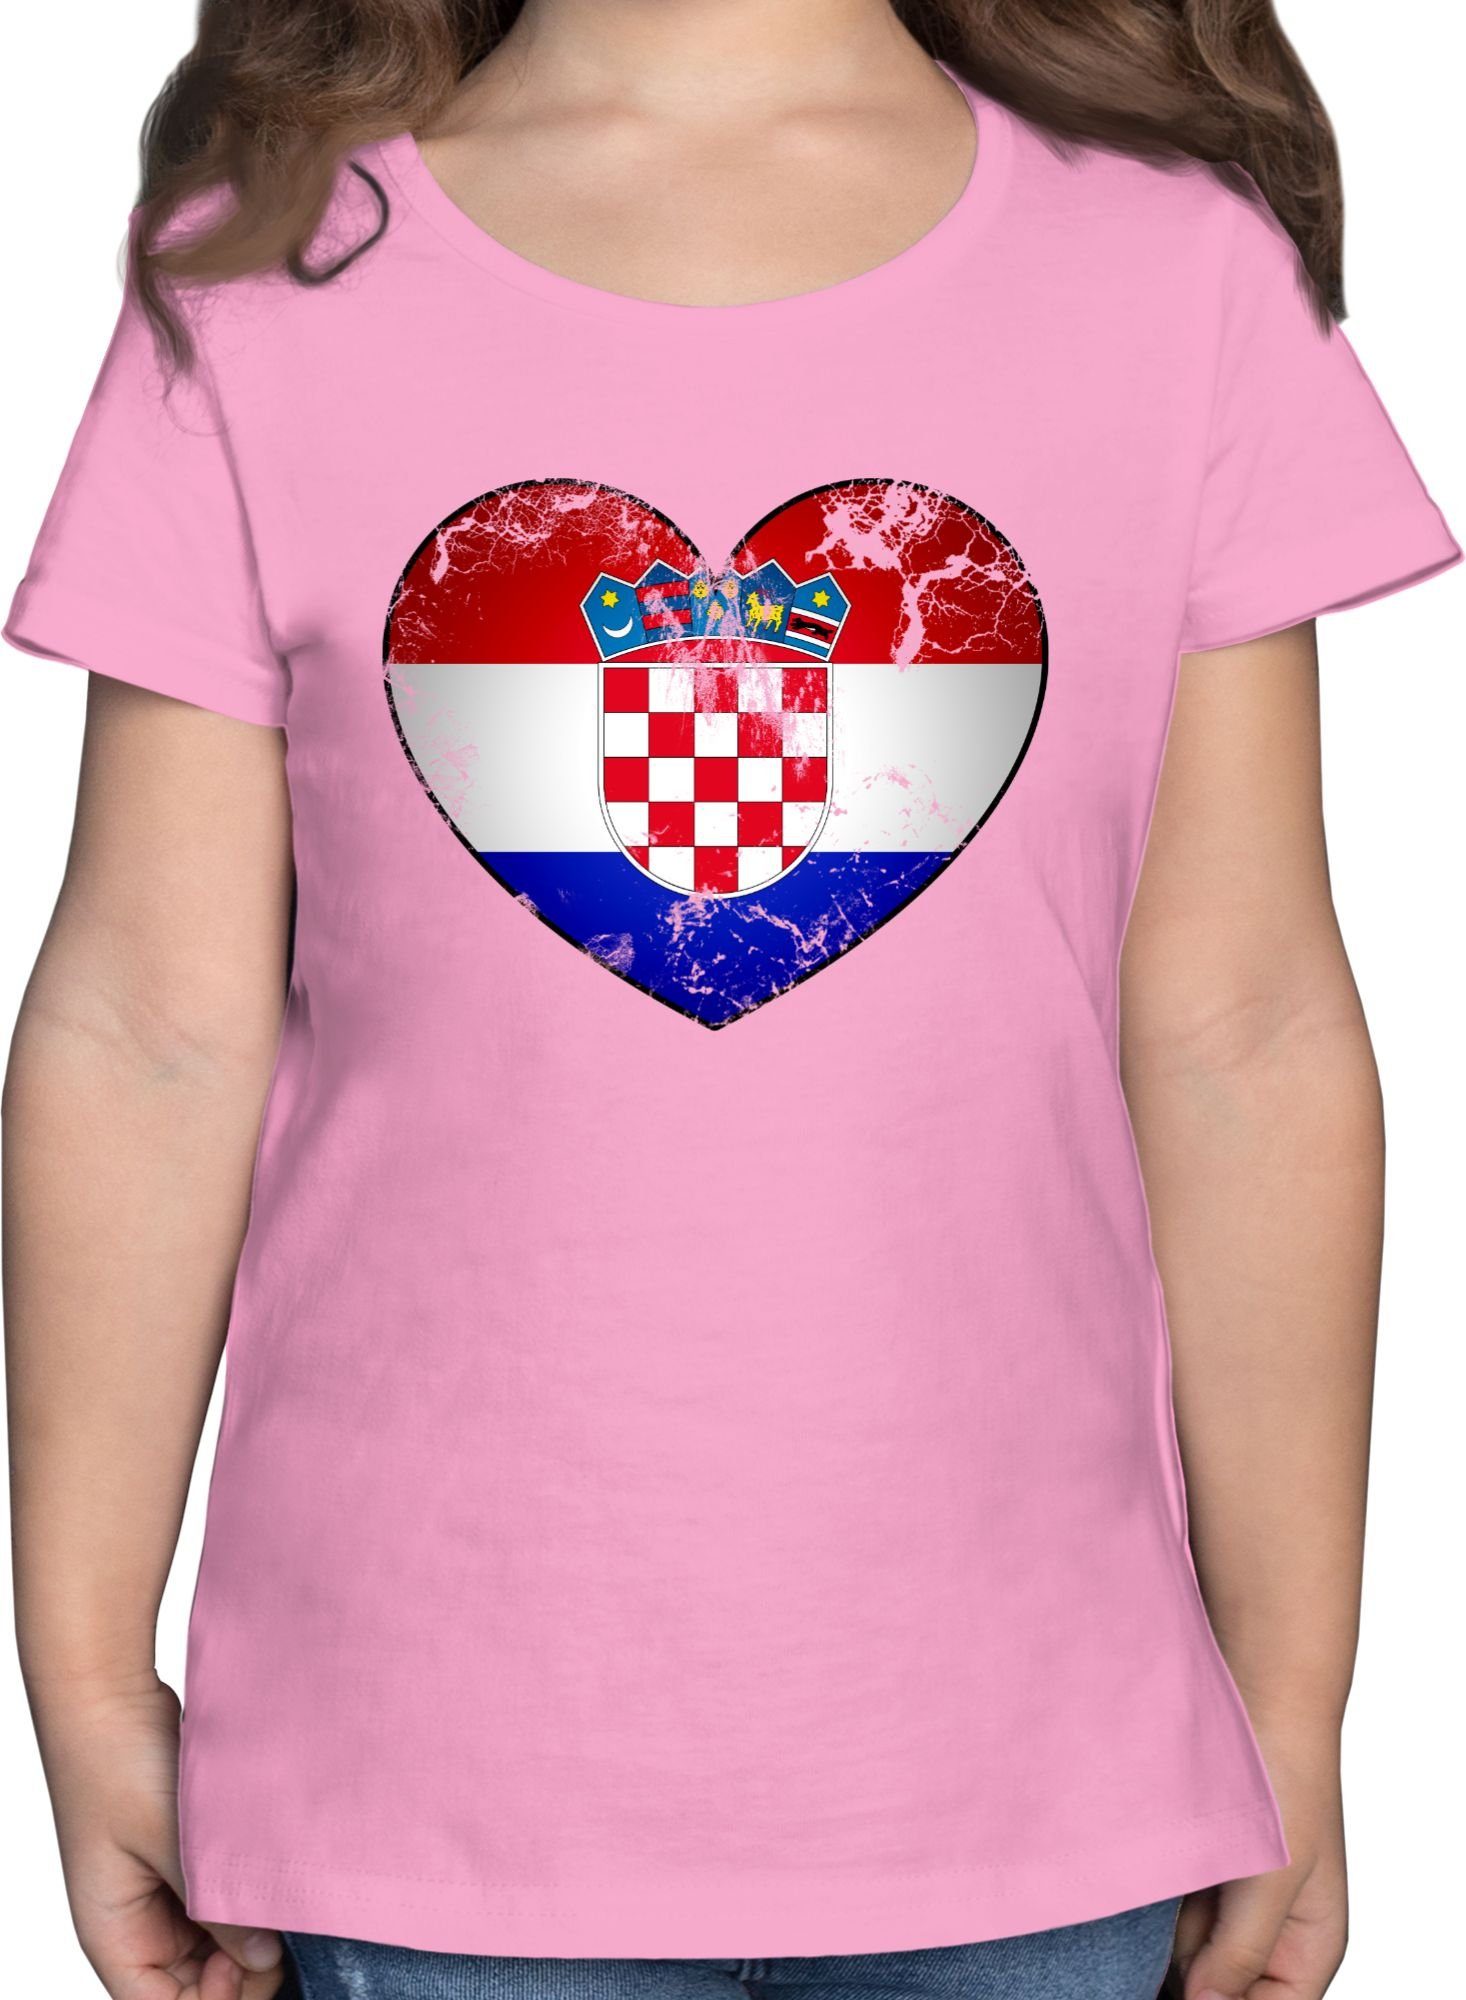 EM T-Shirt 2024 Herz Vintage Kroatien Rosa 1 Fussball Shirtracer Kinder